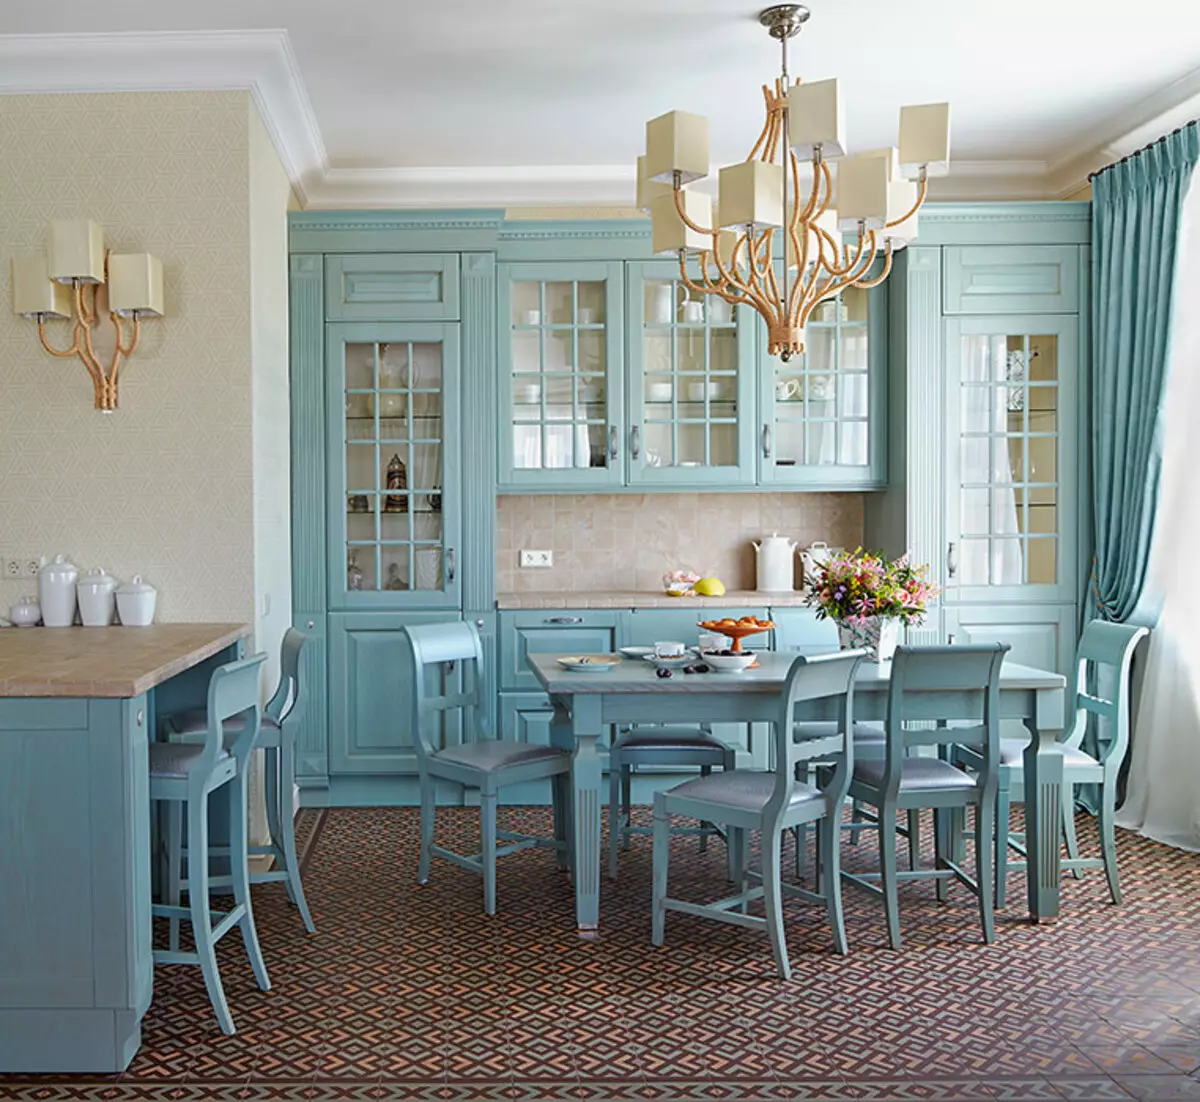 Blaue Küche (82 Fotos): Welche Farben werden im Inneren eines blauen Küchensatzes kombiniert? Küchenentwurf in hellblauen und dunkelblauen Tönen 9555_59